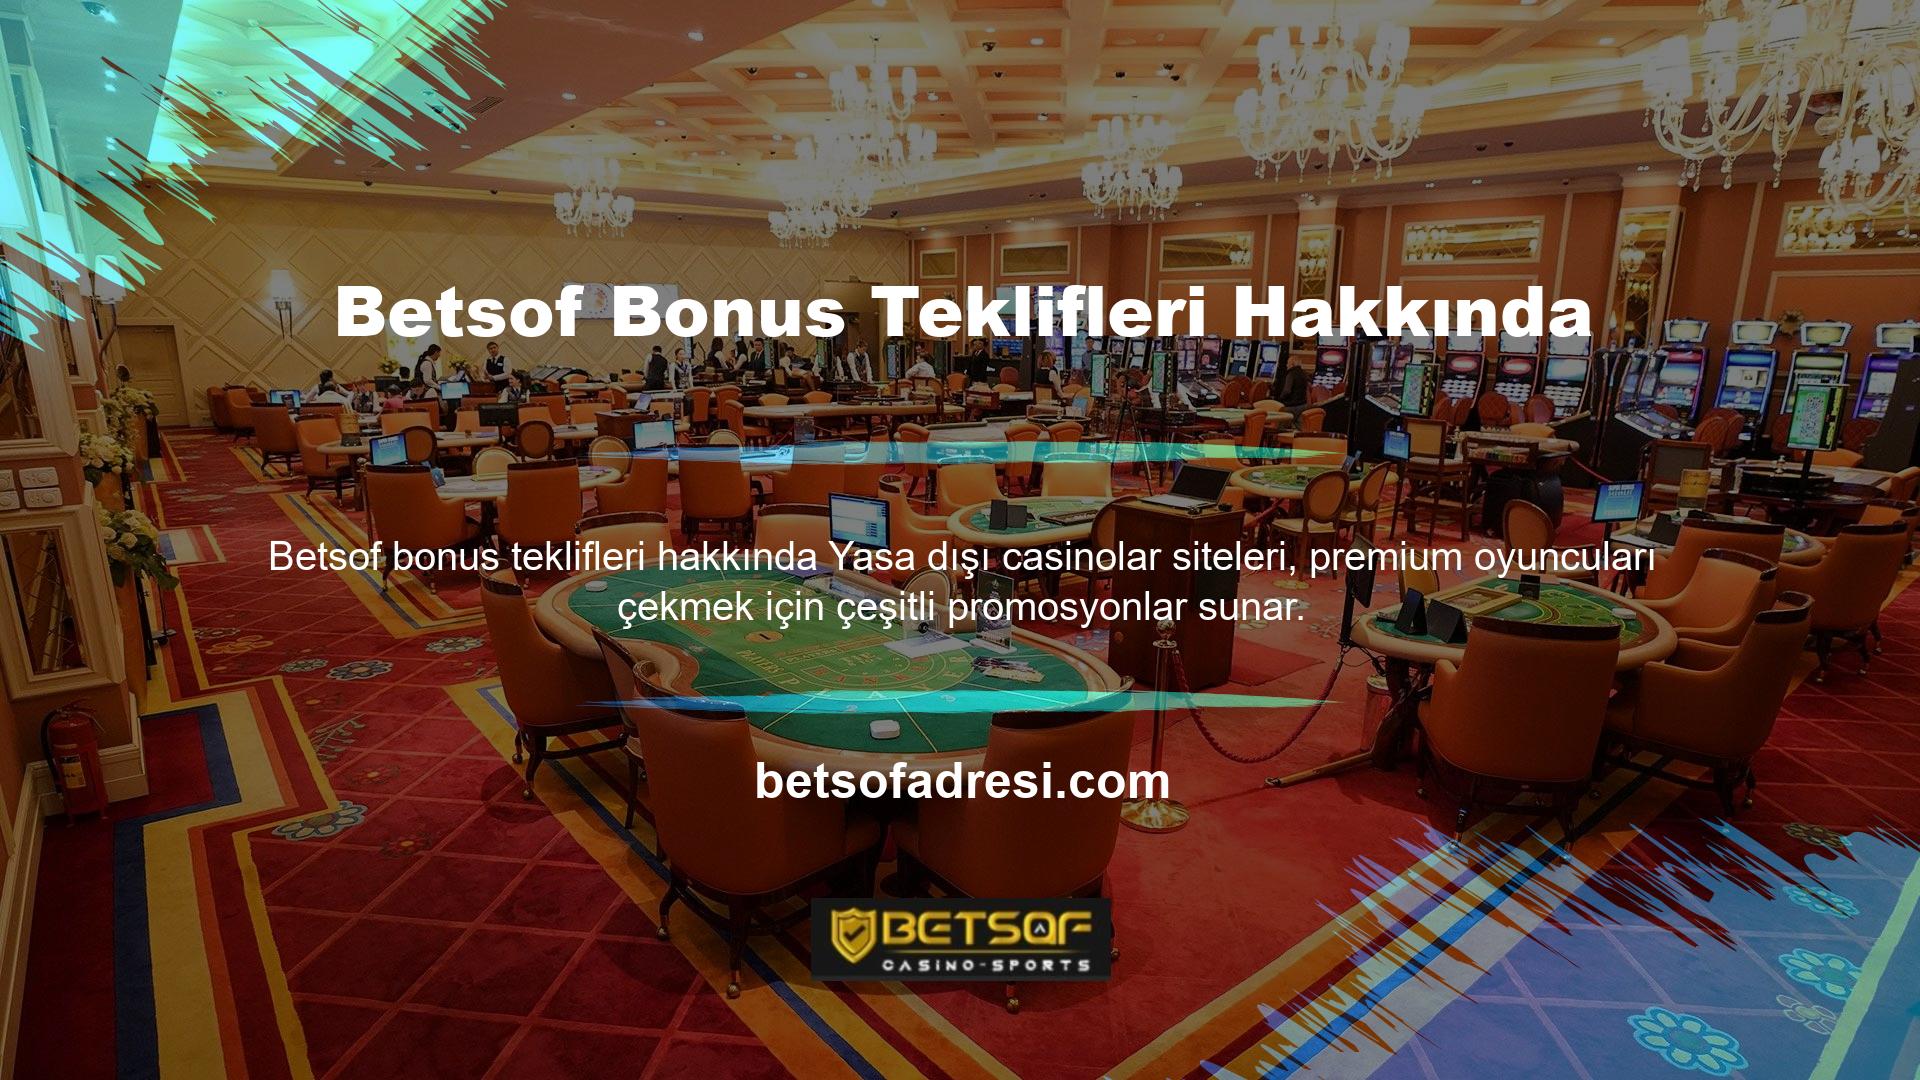 Türkiye'deki yasadışı casinolar siteleri arasında en iyi bonusları sunanlar genellikle en popüler olanlardır